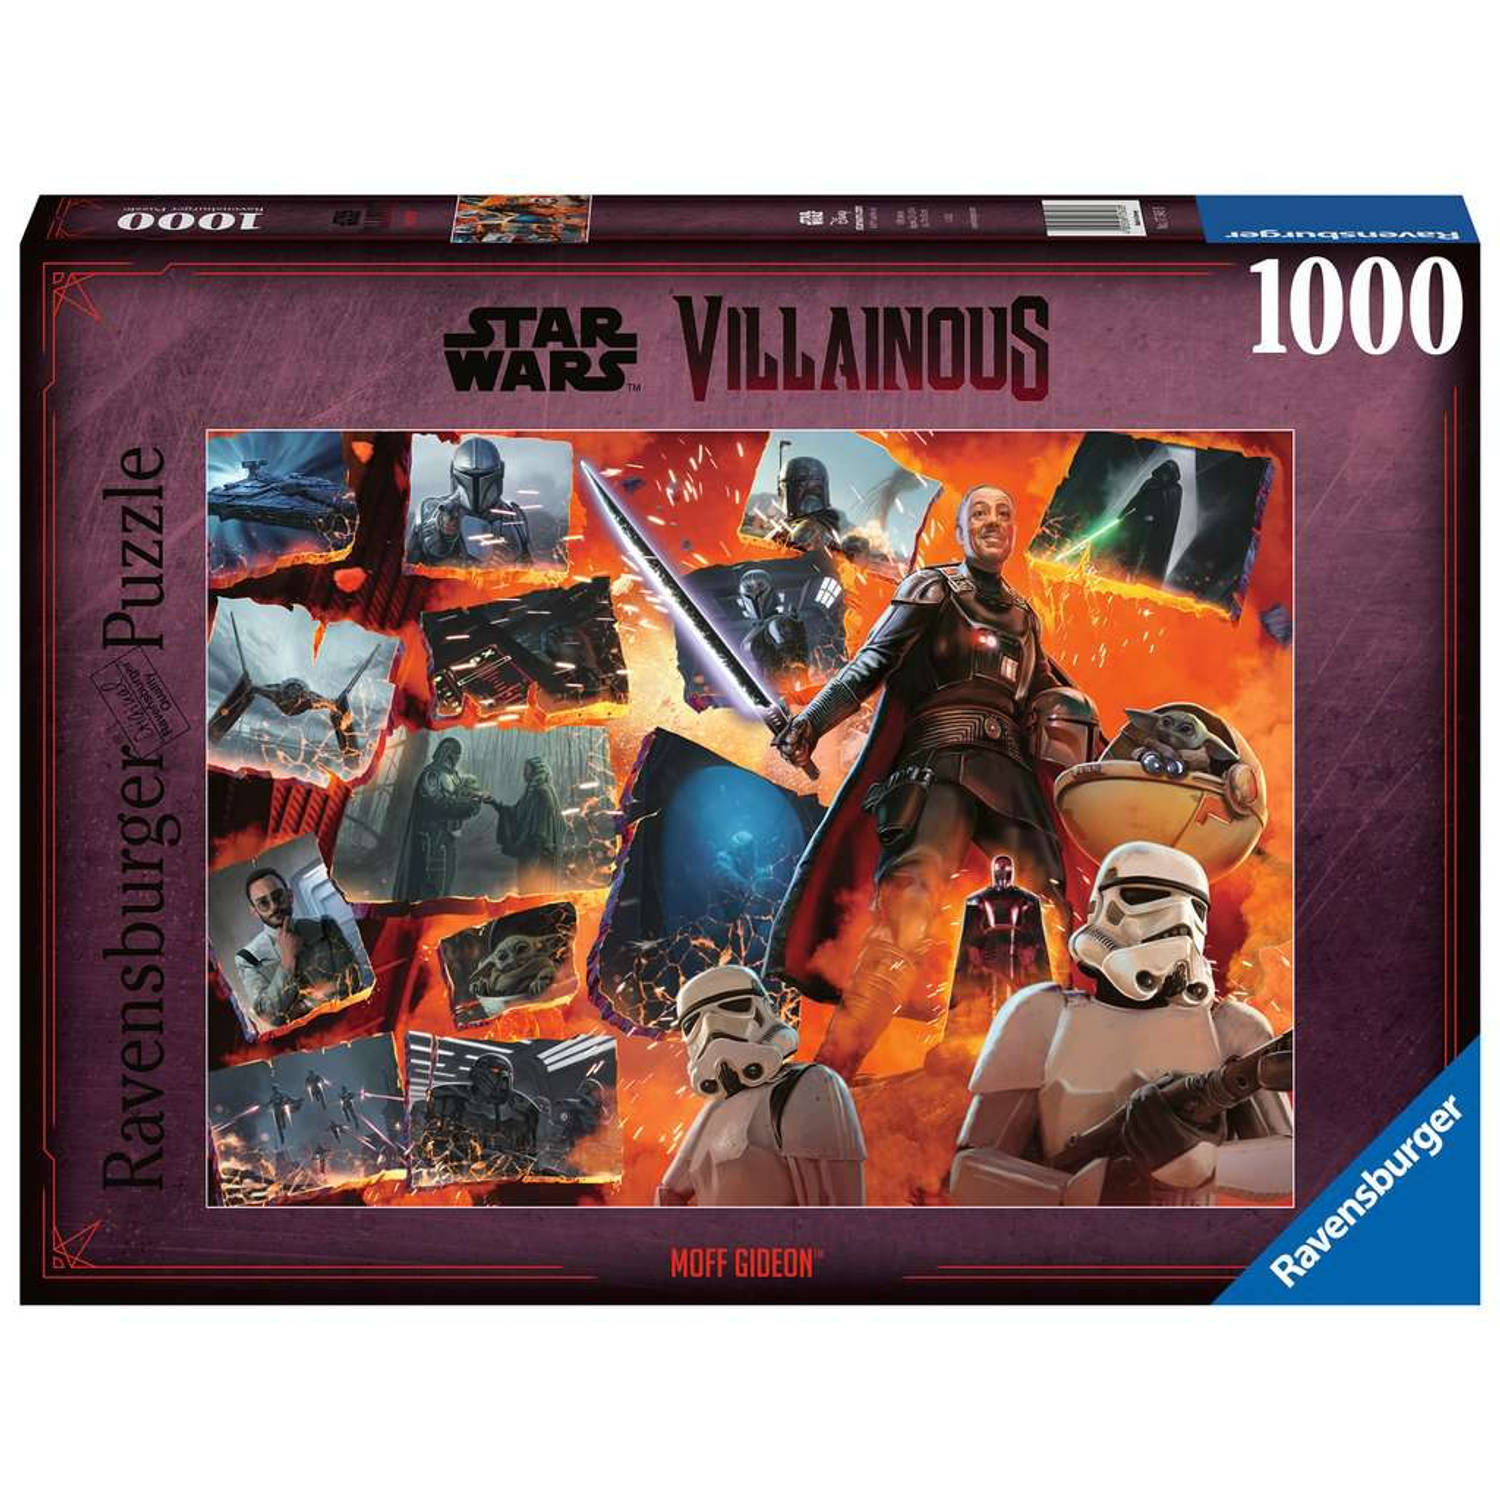 Ravensburger puzzel 1000 stukjes Star Wars villainous moff gideon